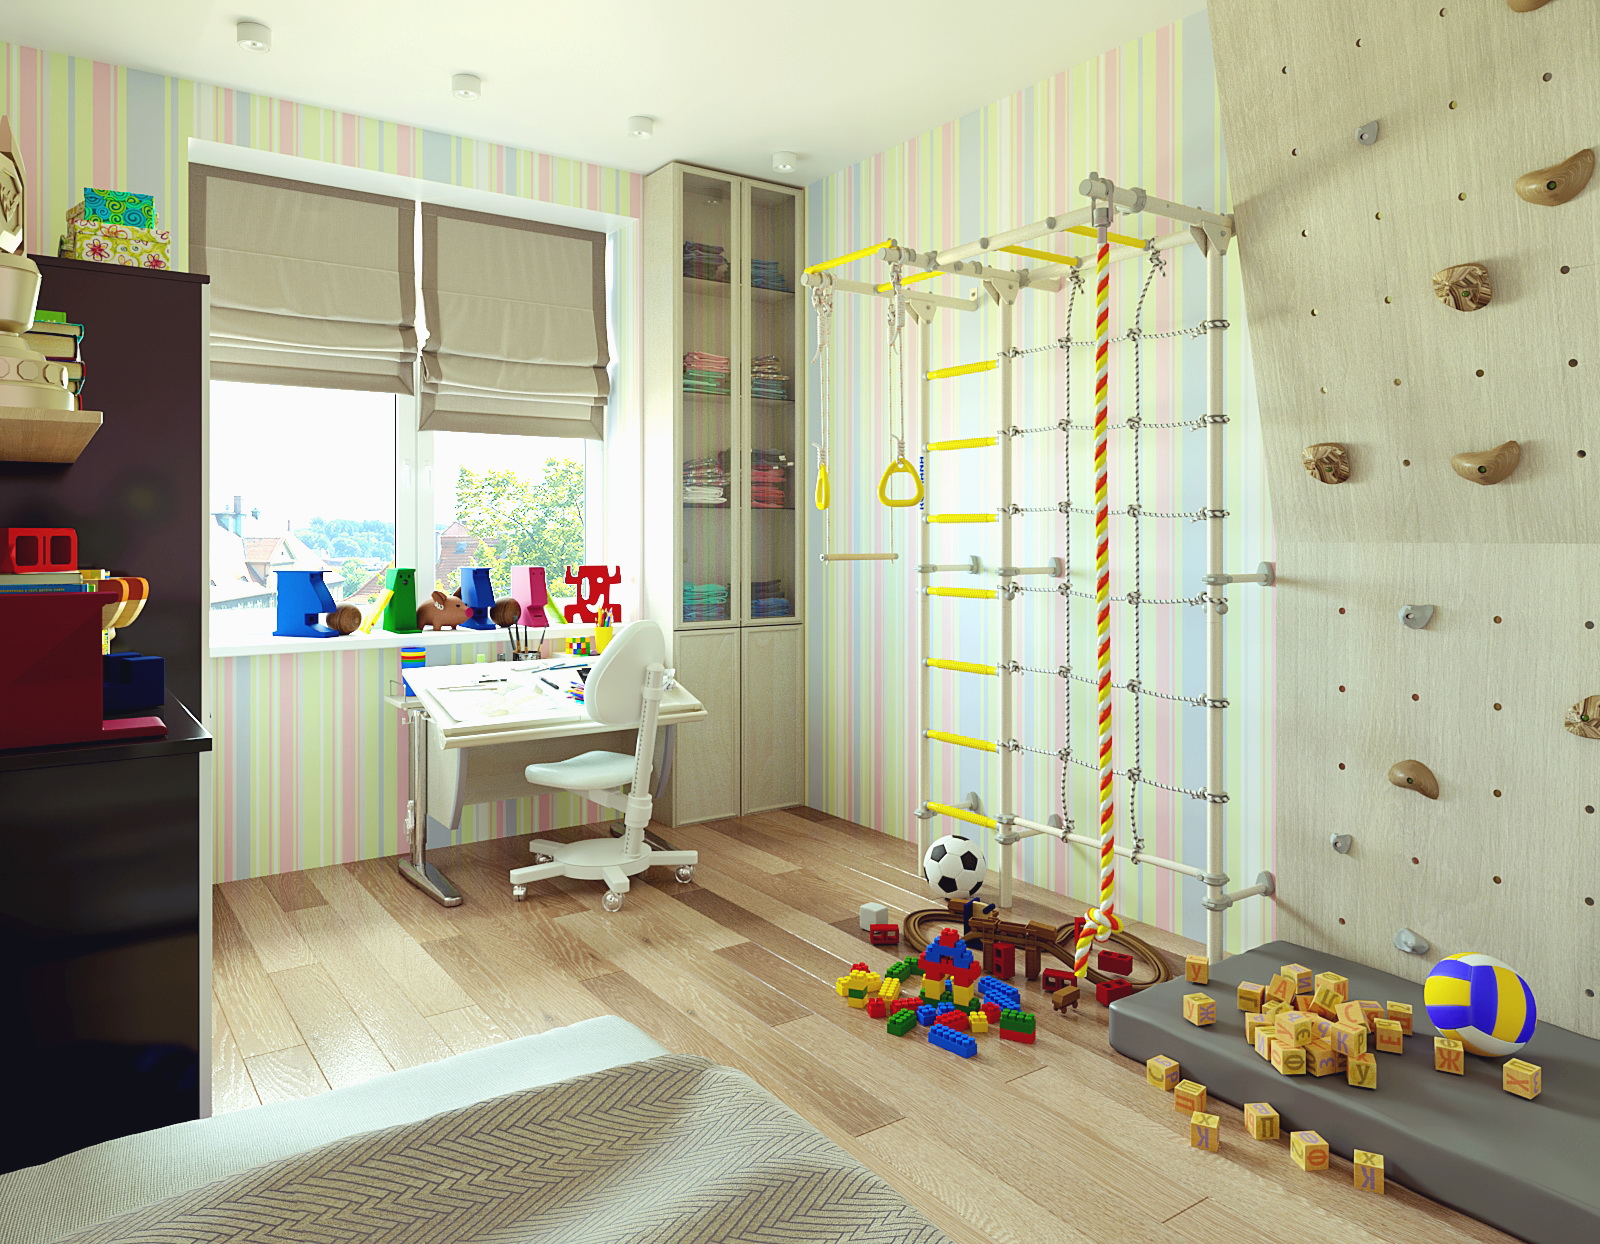 Visualização 3D de sala infantil em 3d max corona render imagem